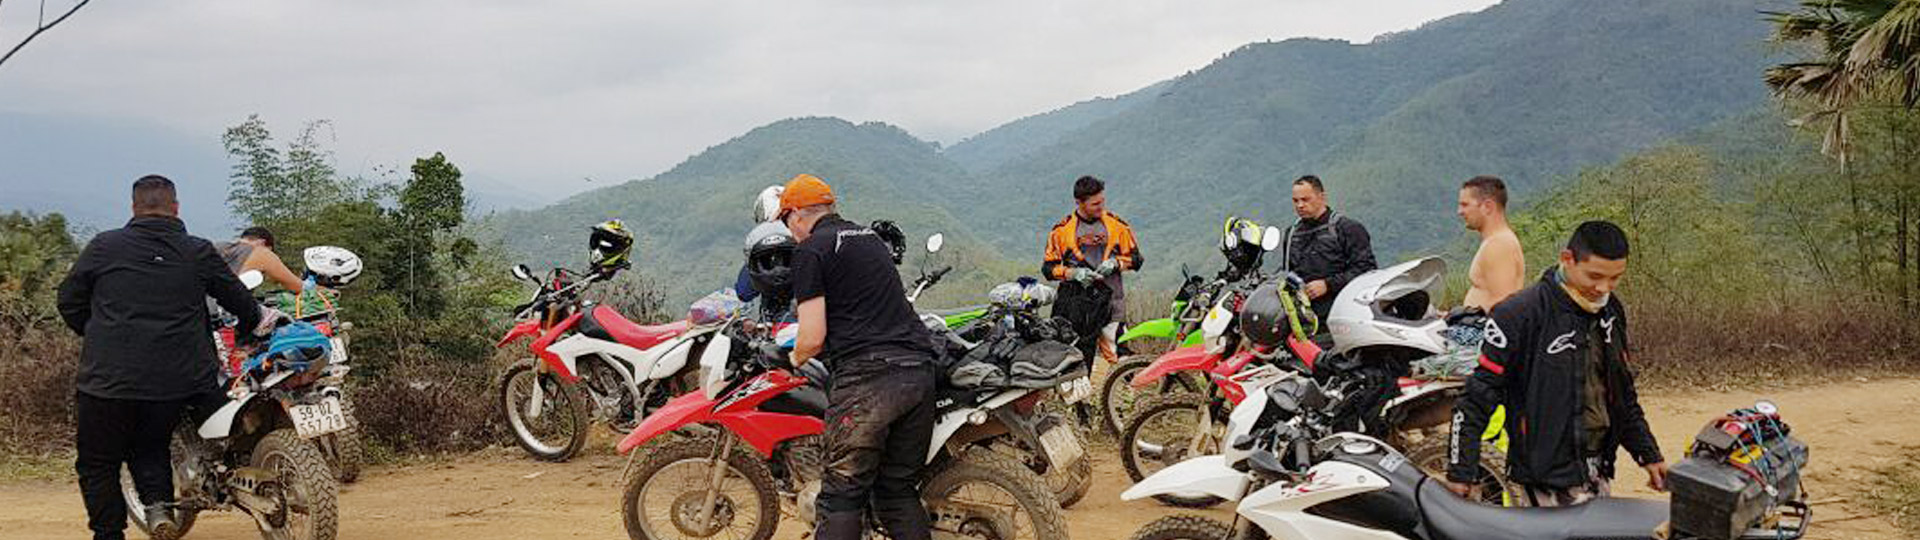 9 Days Luang Prabang Backroad Motorbike Tours